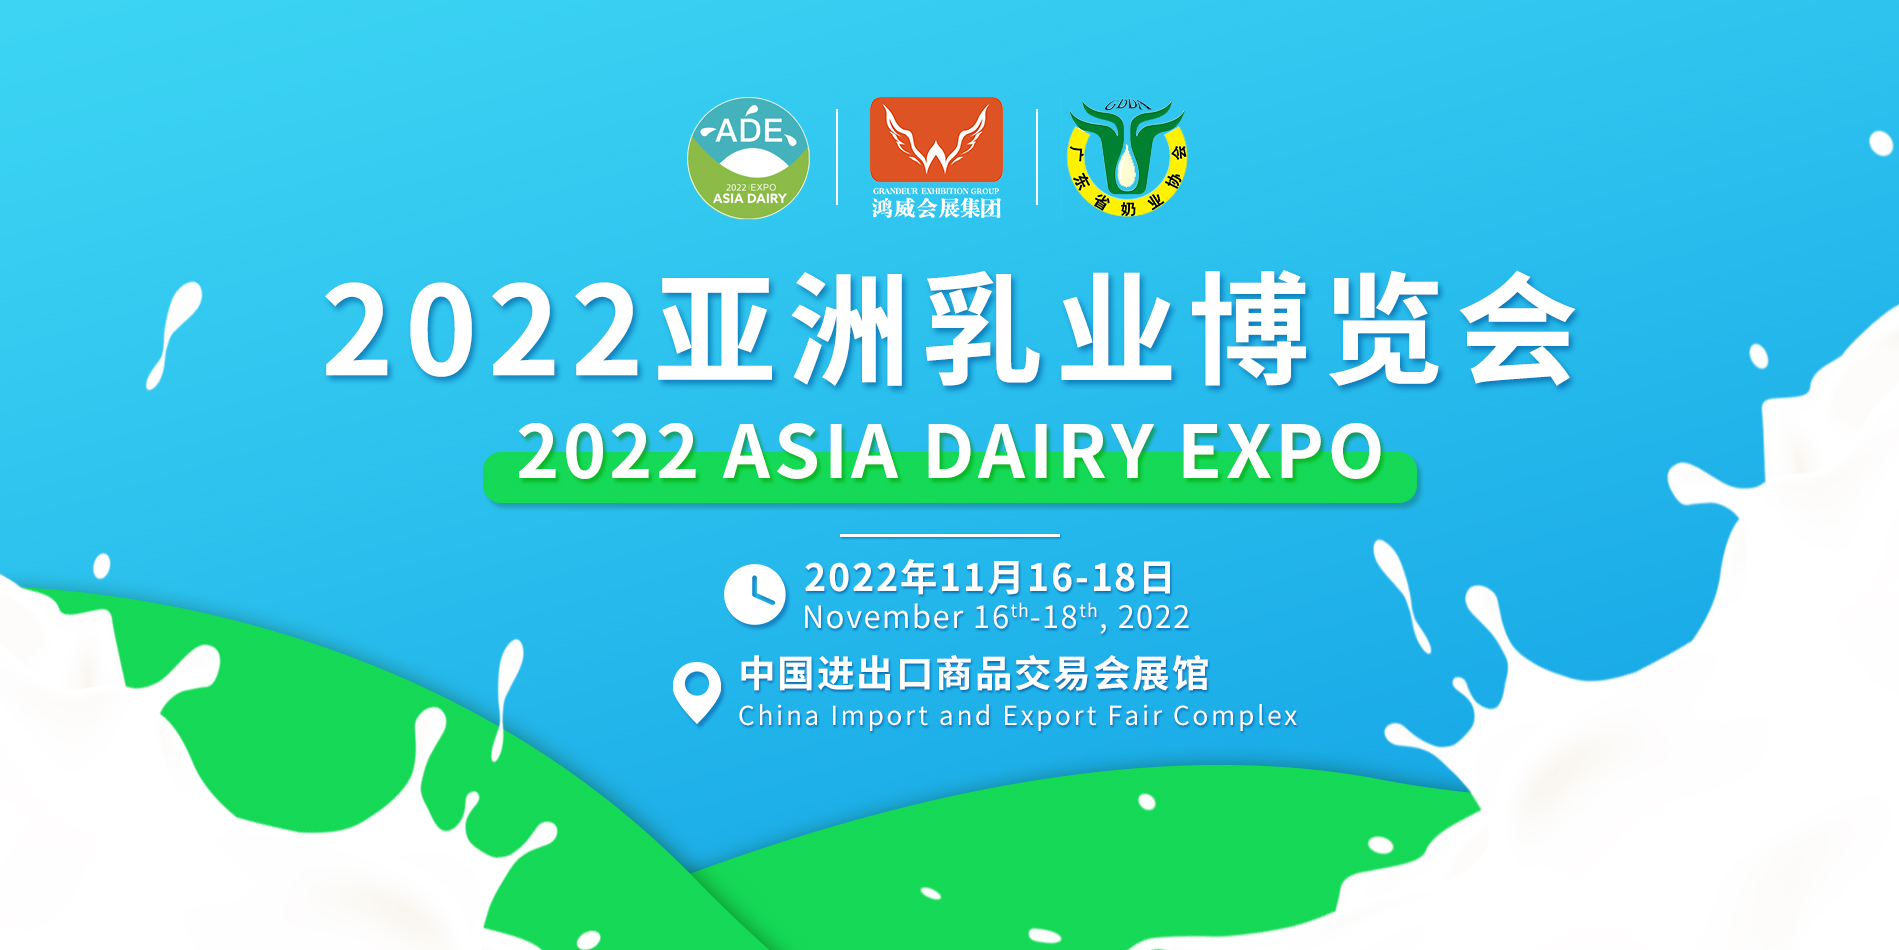 中国2022奶业展/奶制品展/奶粉展览会